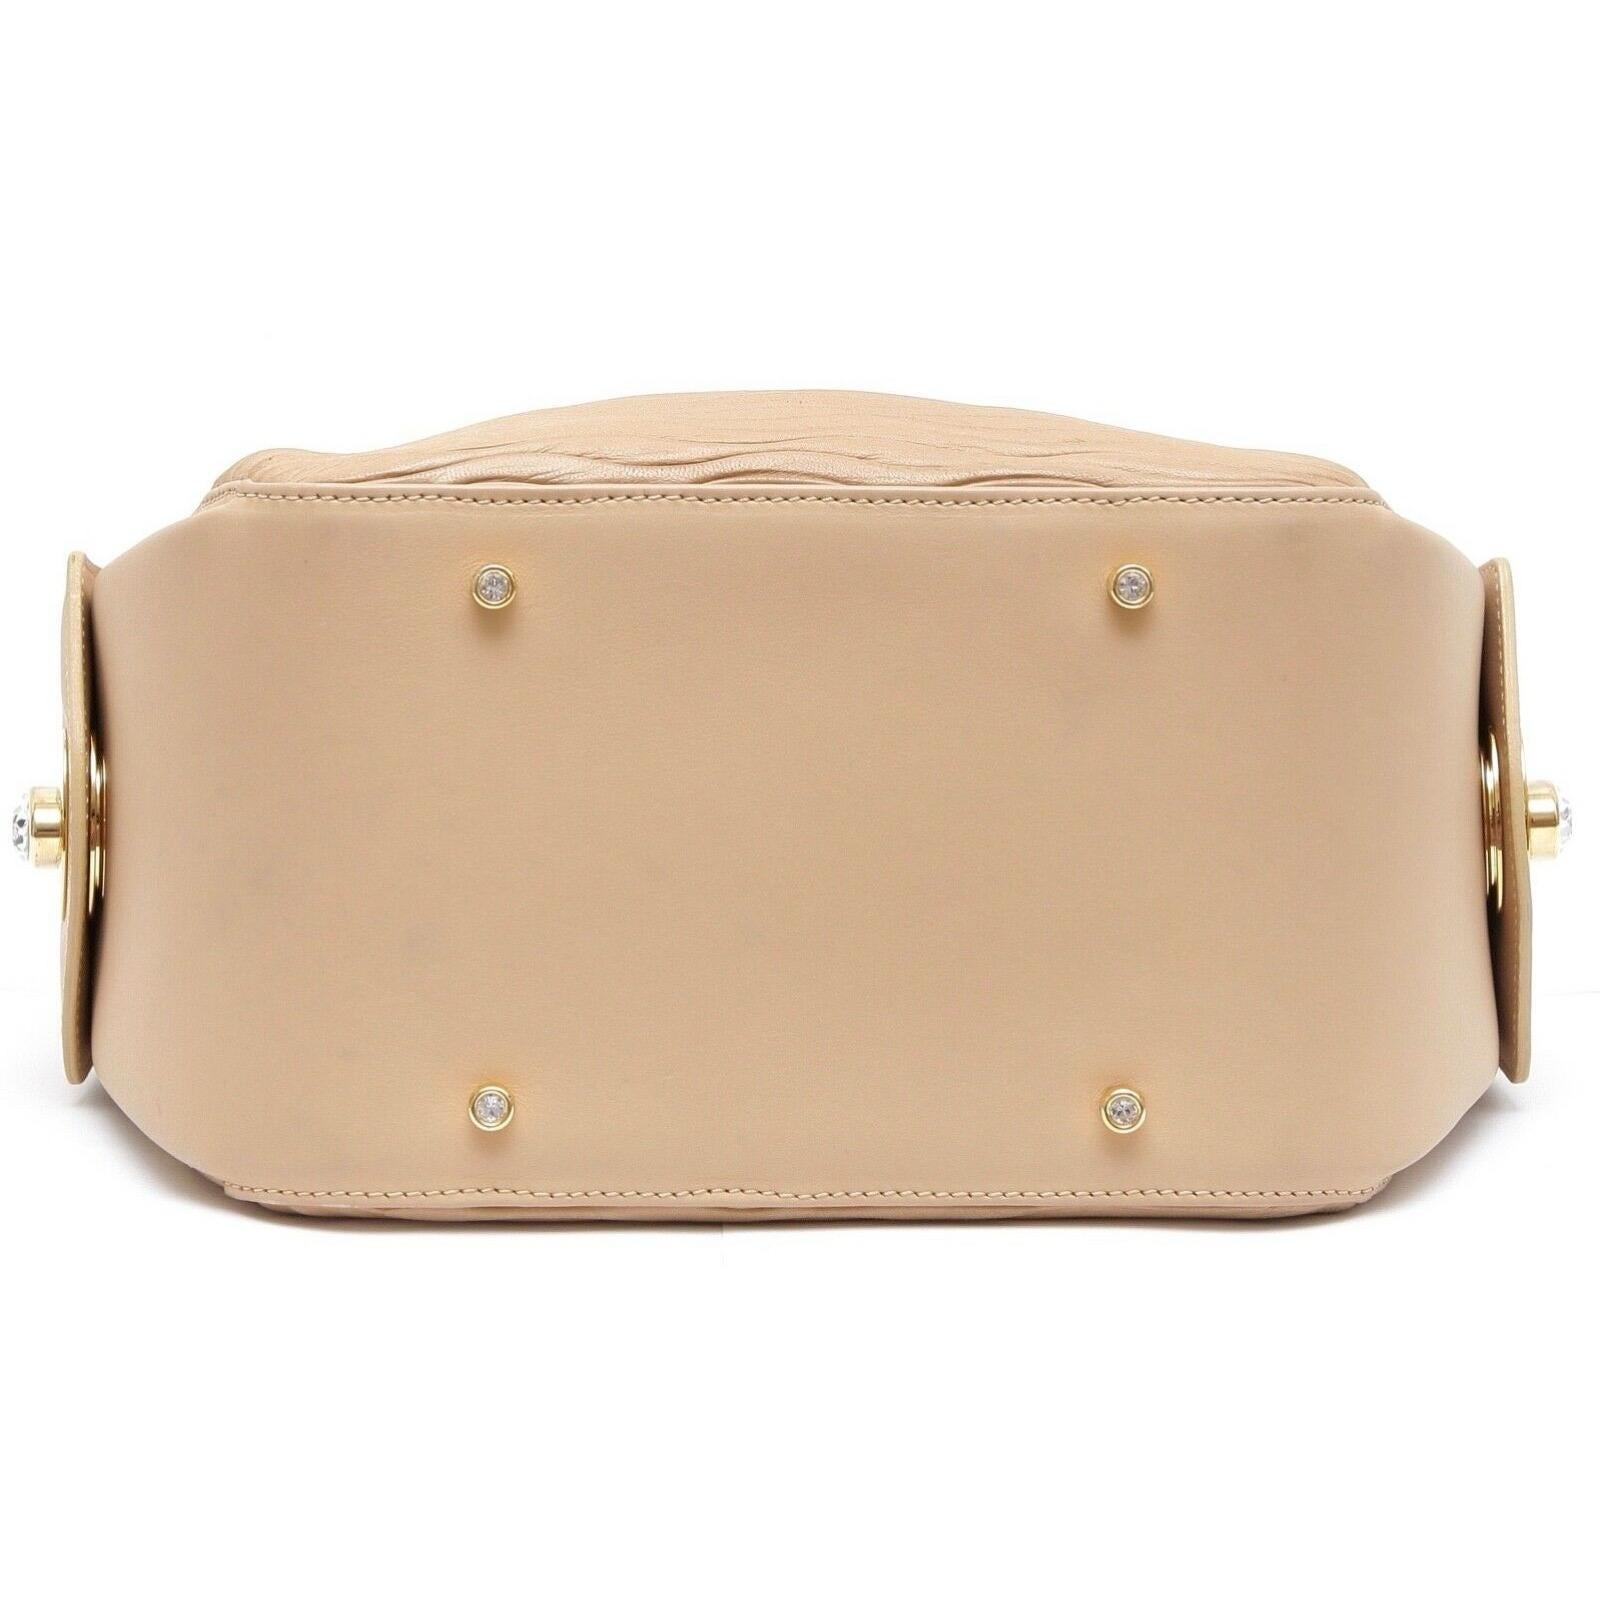 JUDITH LEIBER Leather Shoulder Bag Hobo Beige Gold-Tone HW Crystal Top Zipper For Sale 3